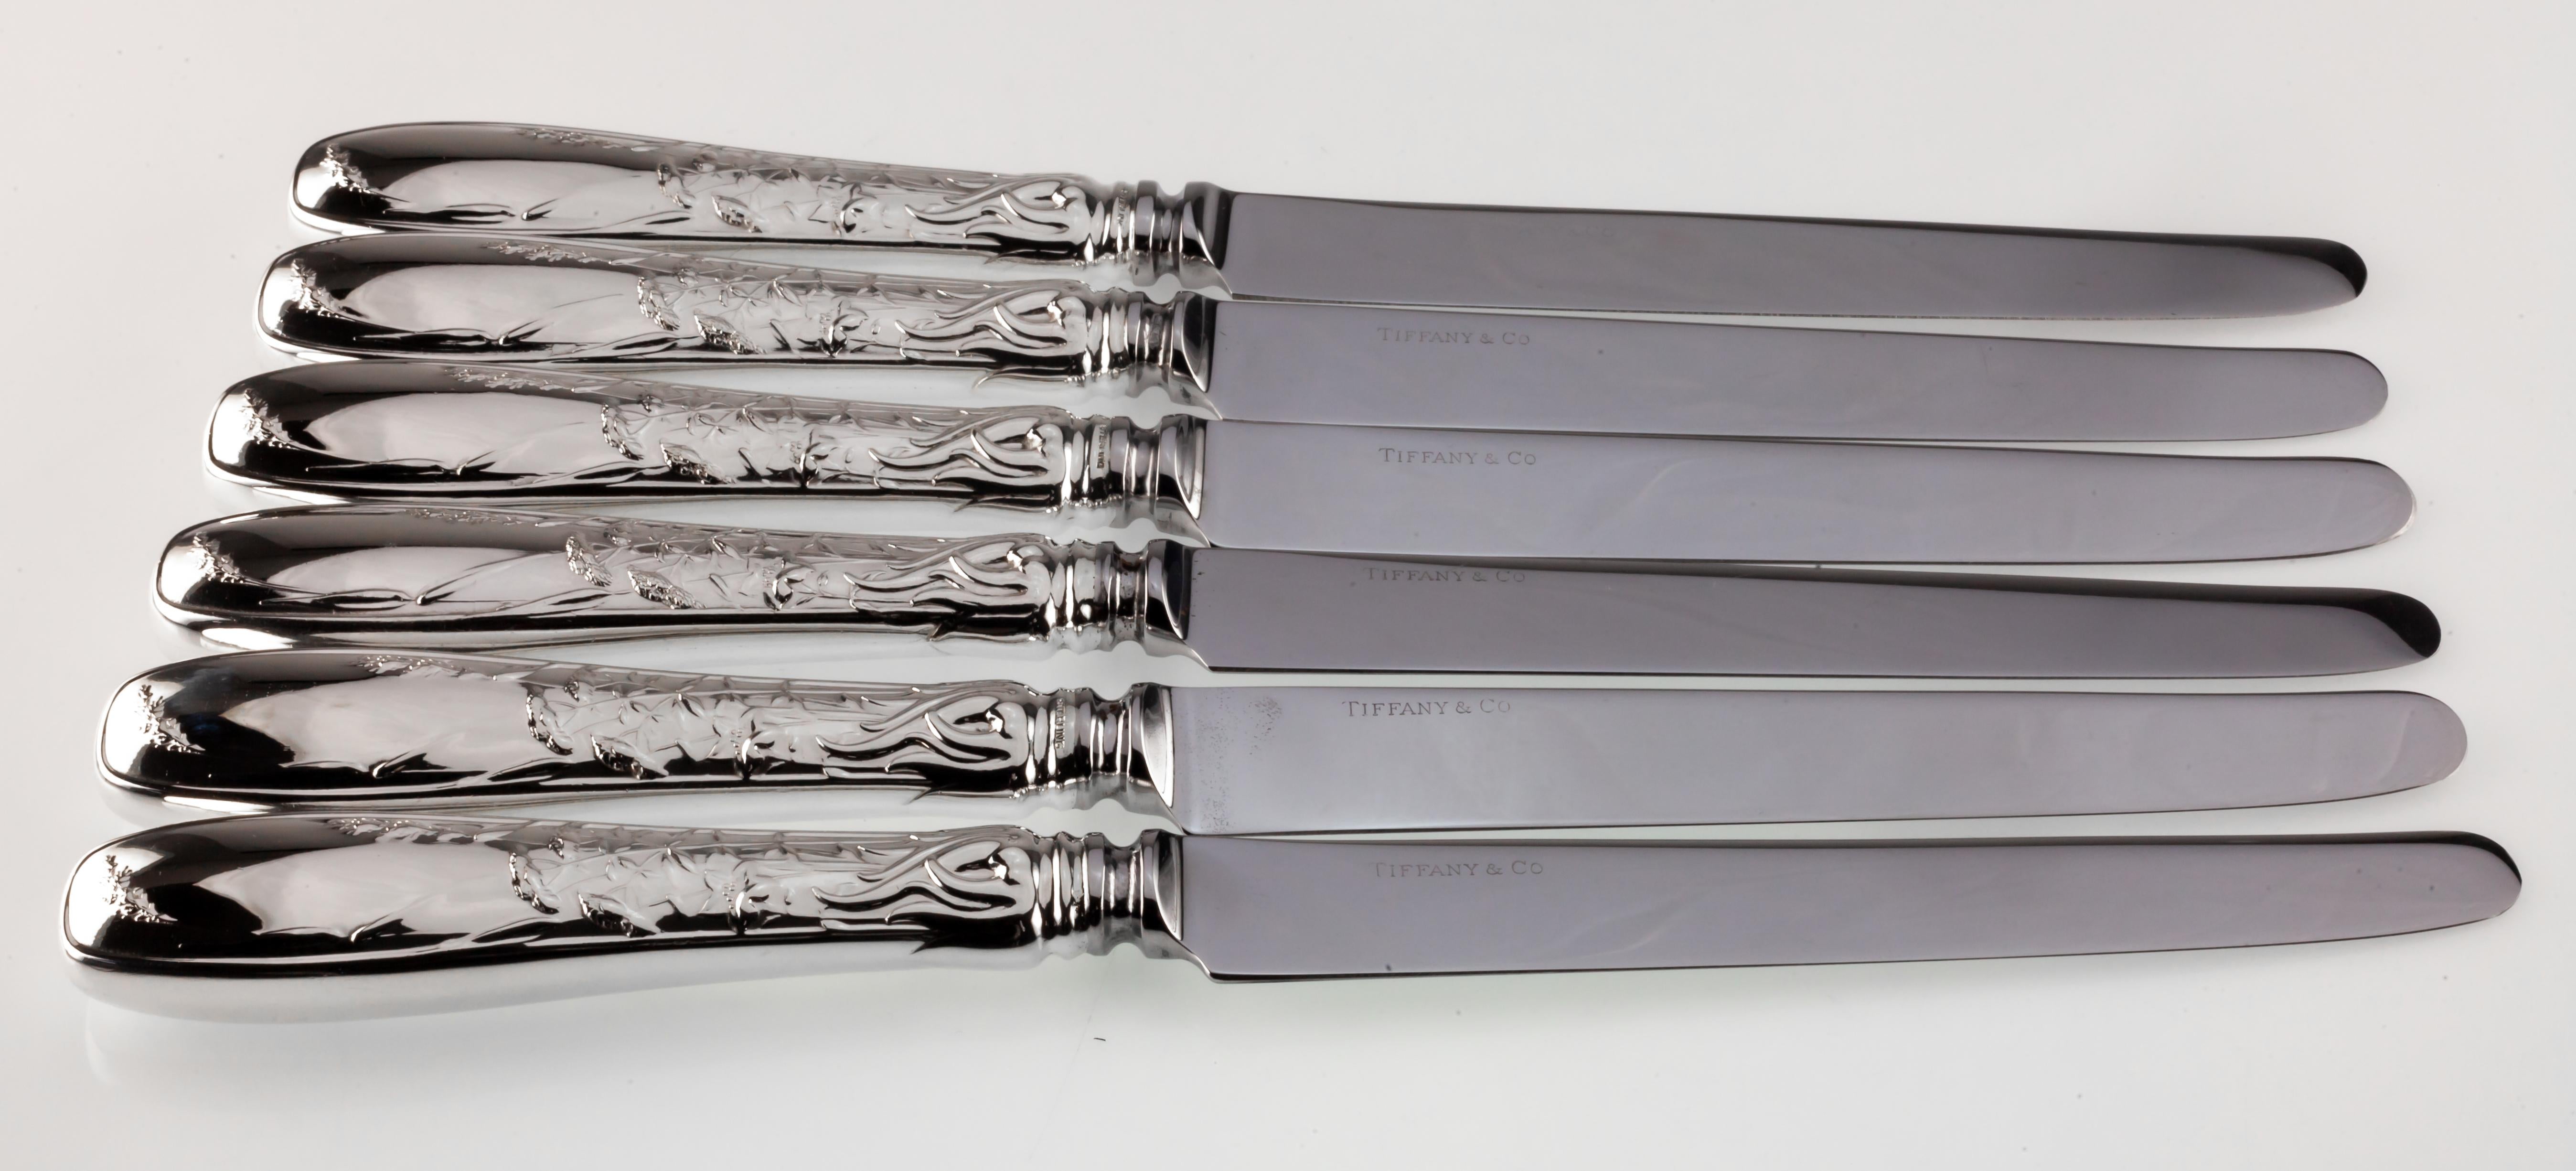 Art Nouveau Tiffany & Co. Audubon Sterling Silver Flatware Set 32 Pieces Total Gorgeous!